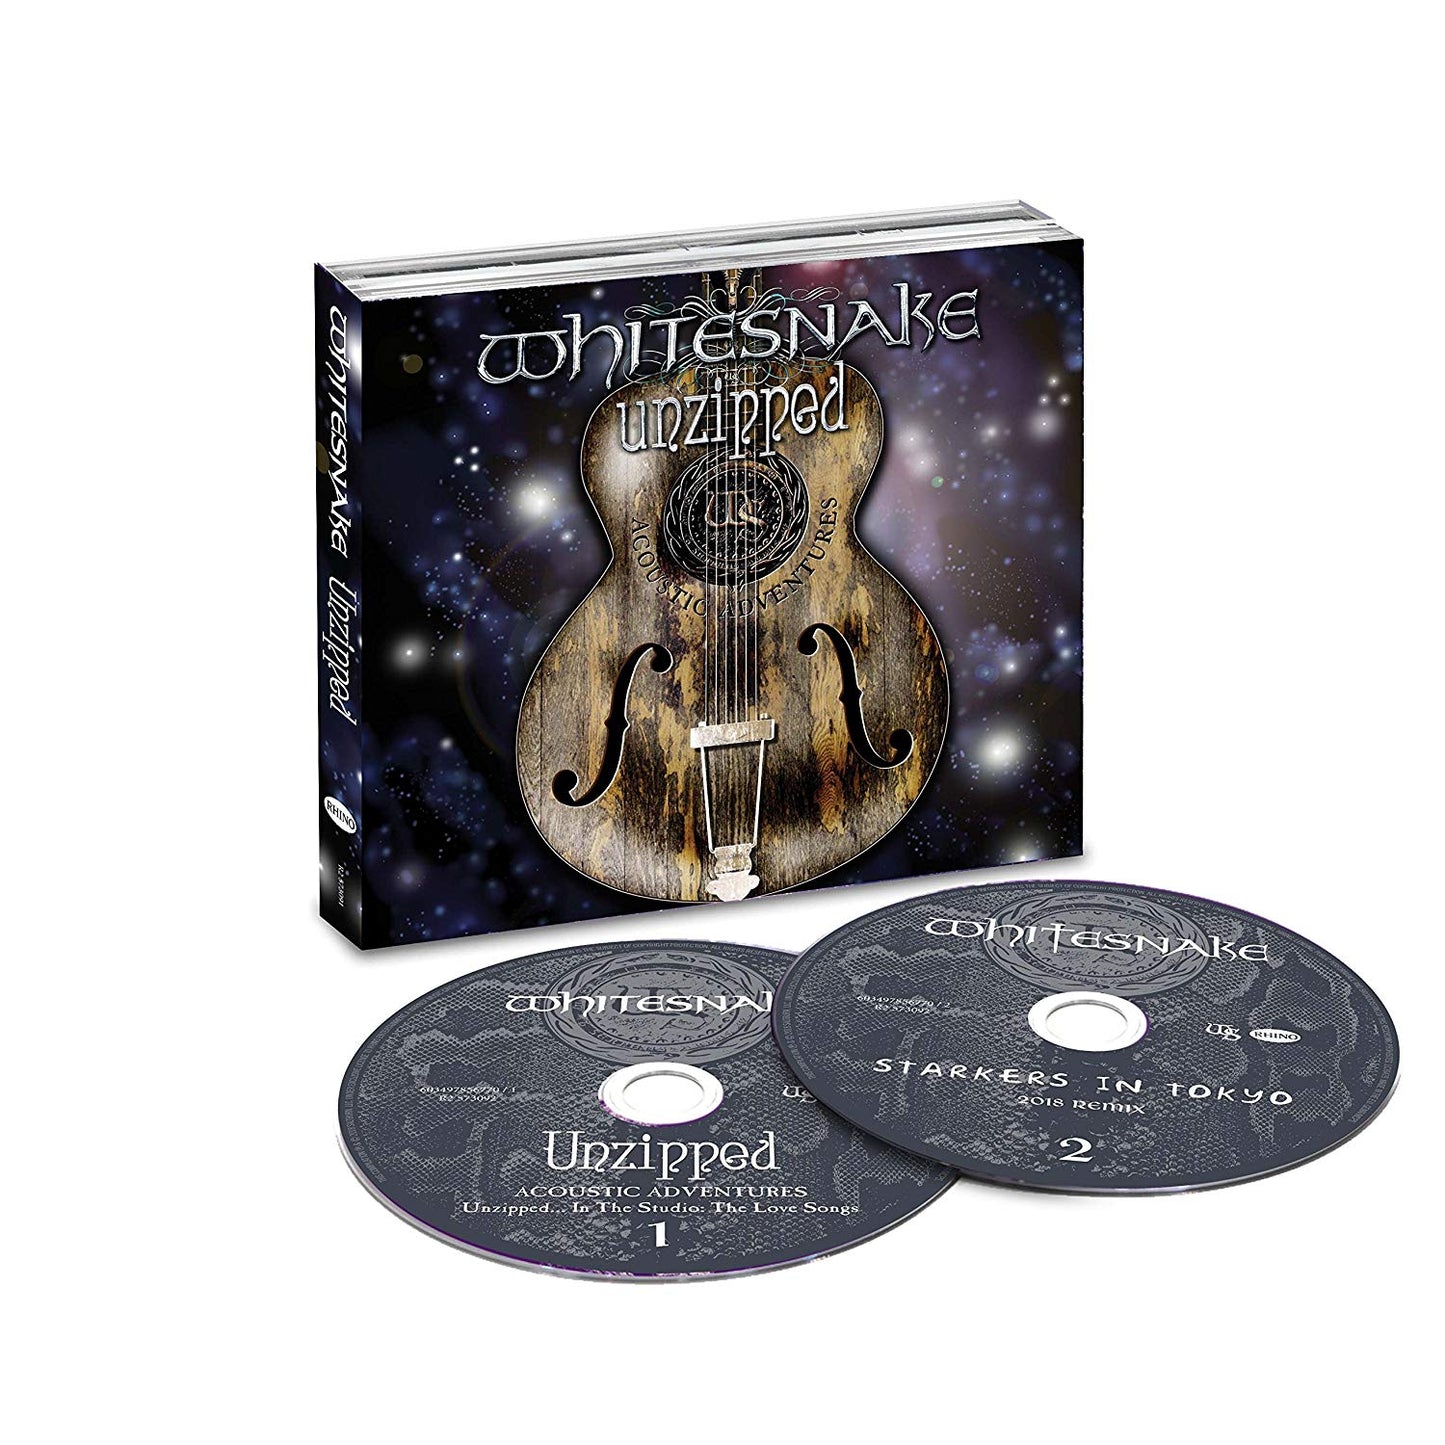 Whitesnake - Unzipped Deluxe 2CD